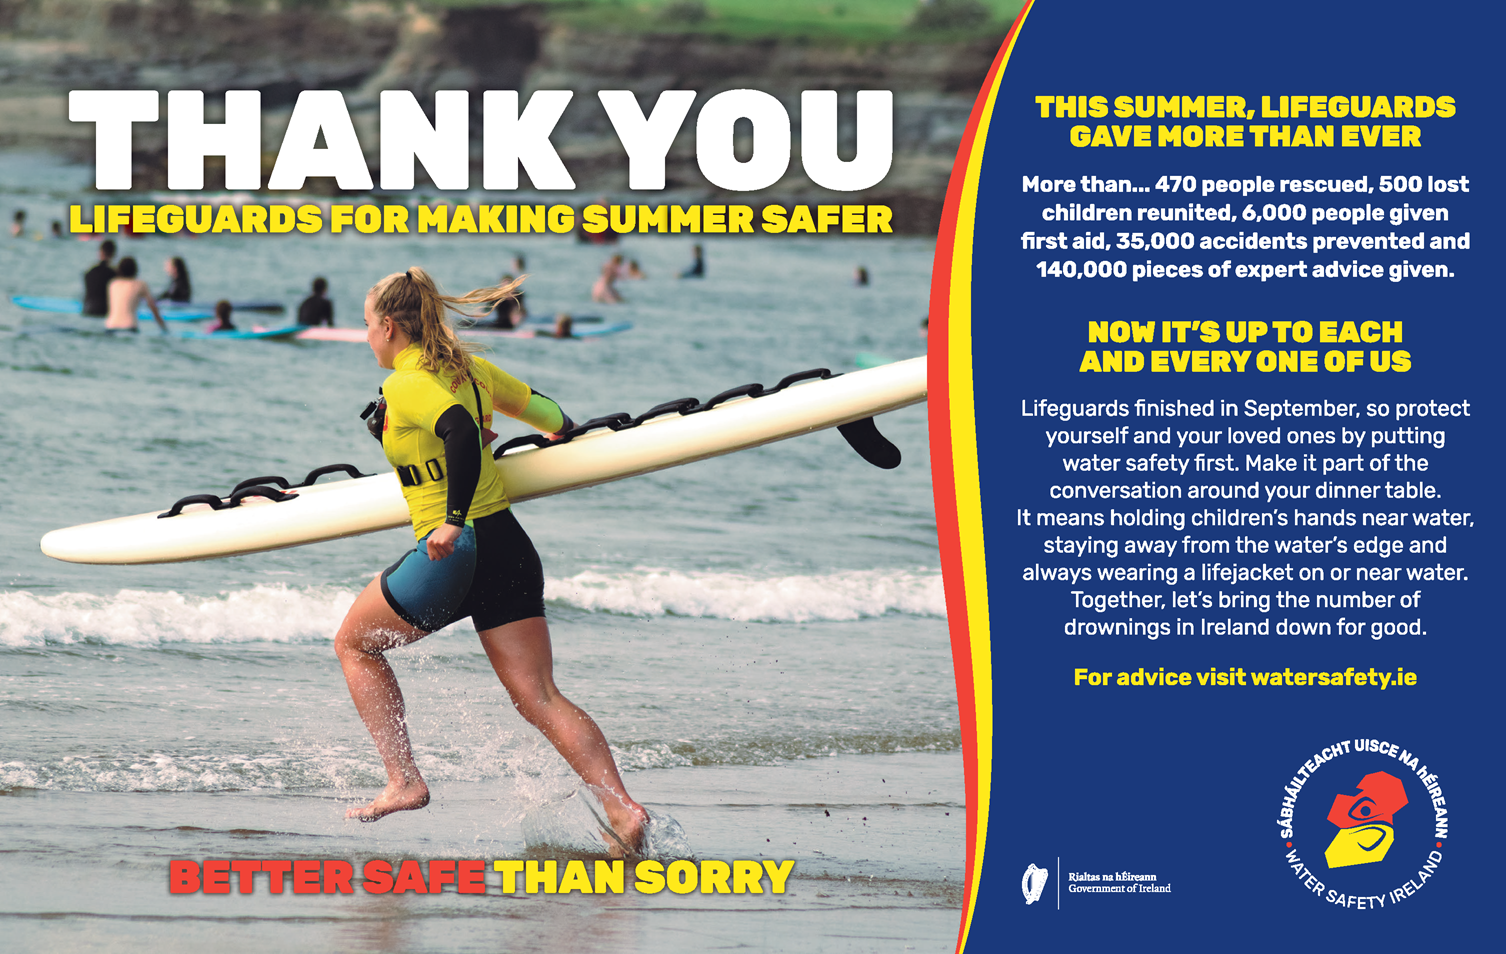 Thank you Lifeguards